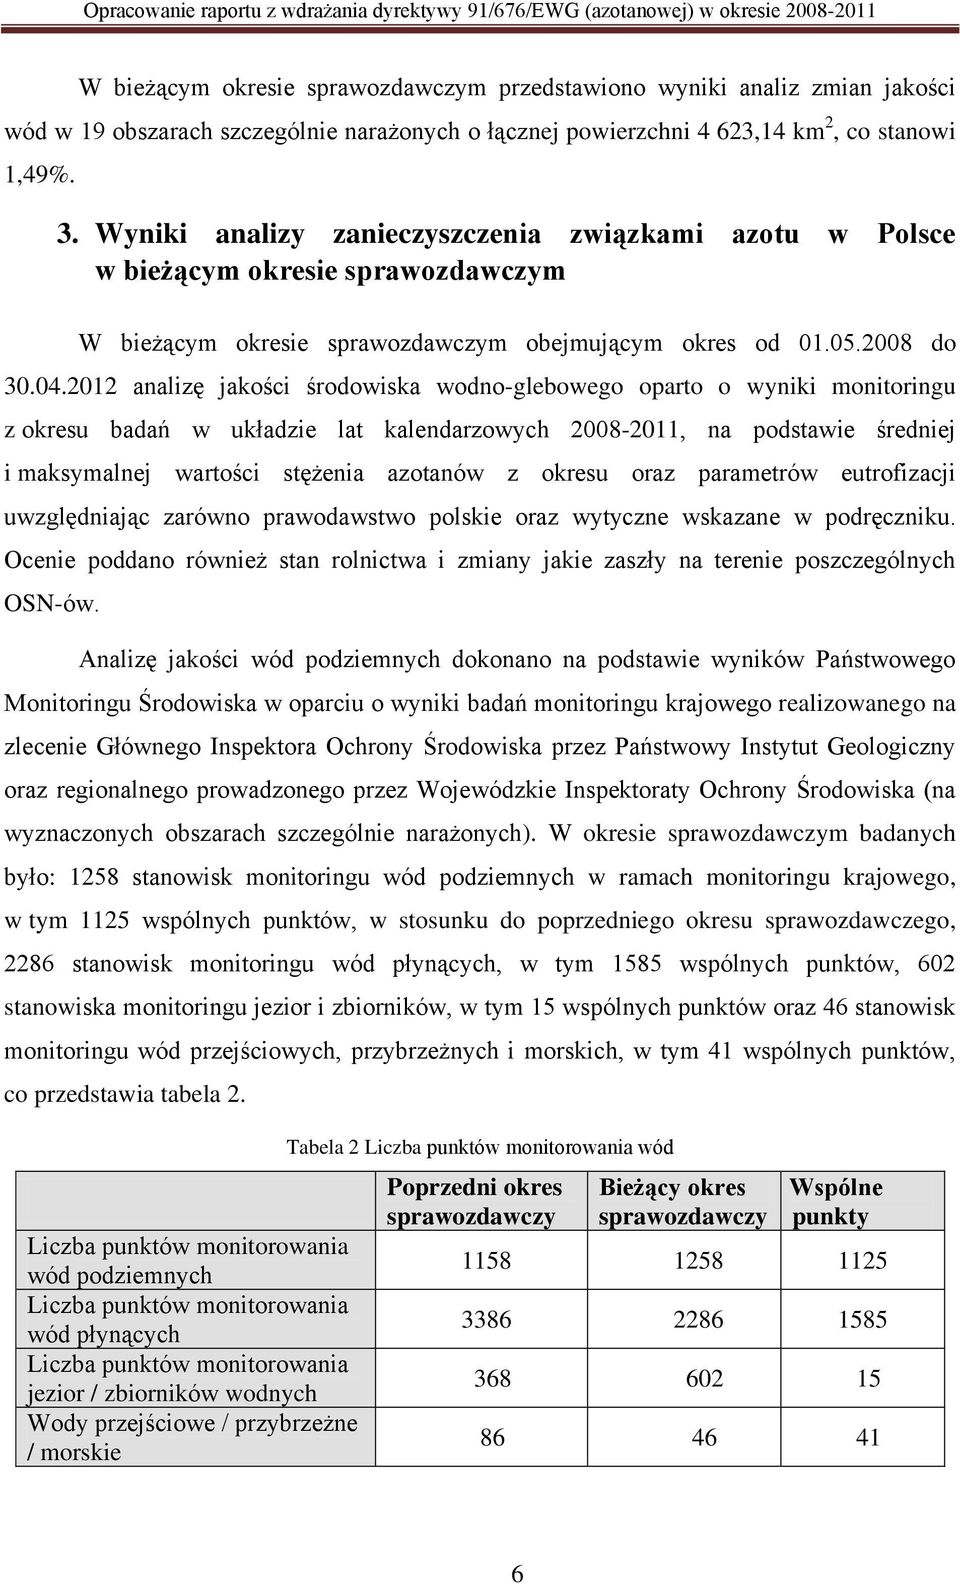 Wyniki analizy zanieczyszczenia związkami azotu w Polsce w bieżącym okresie sprawozdawczym W bieżącym okresie sprawozdawczym obejmującym okres od 01.05.2008 do 30.04.